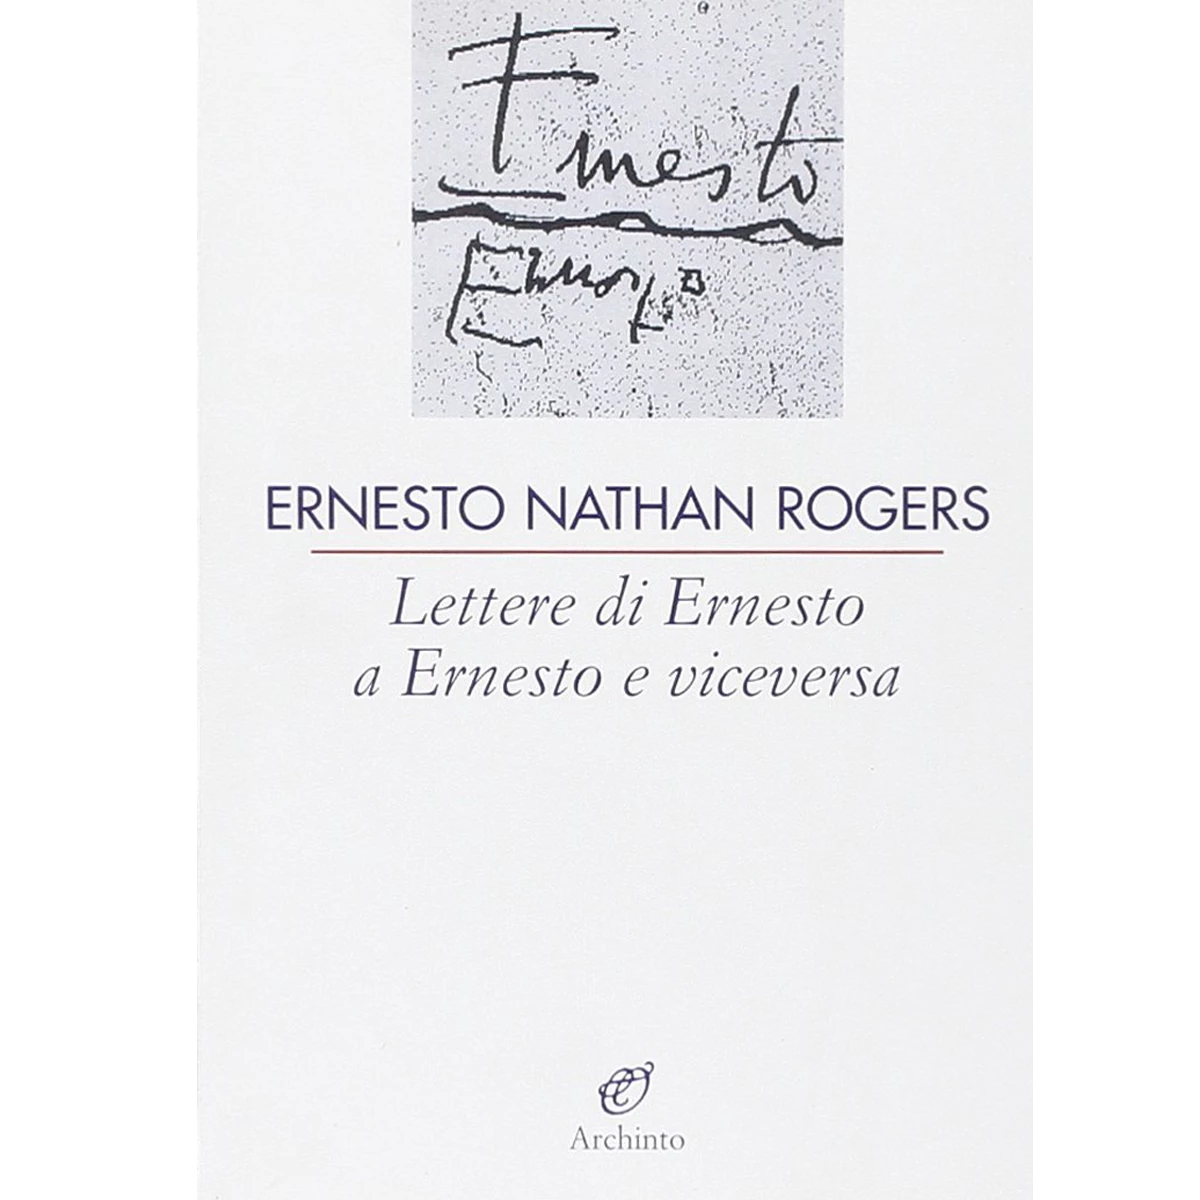 Lettere di Ernesto a Ernesto y viceversa